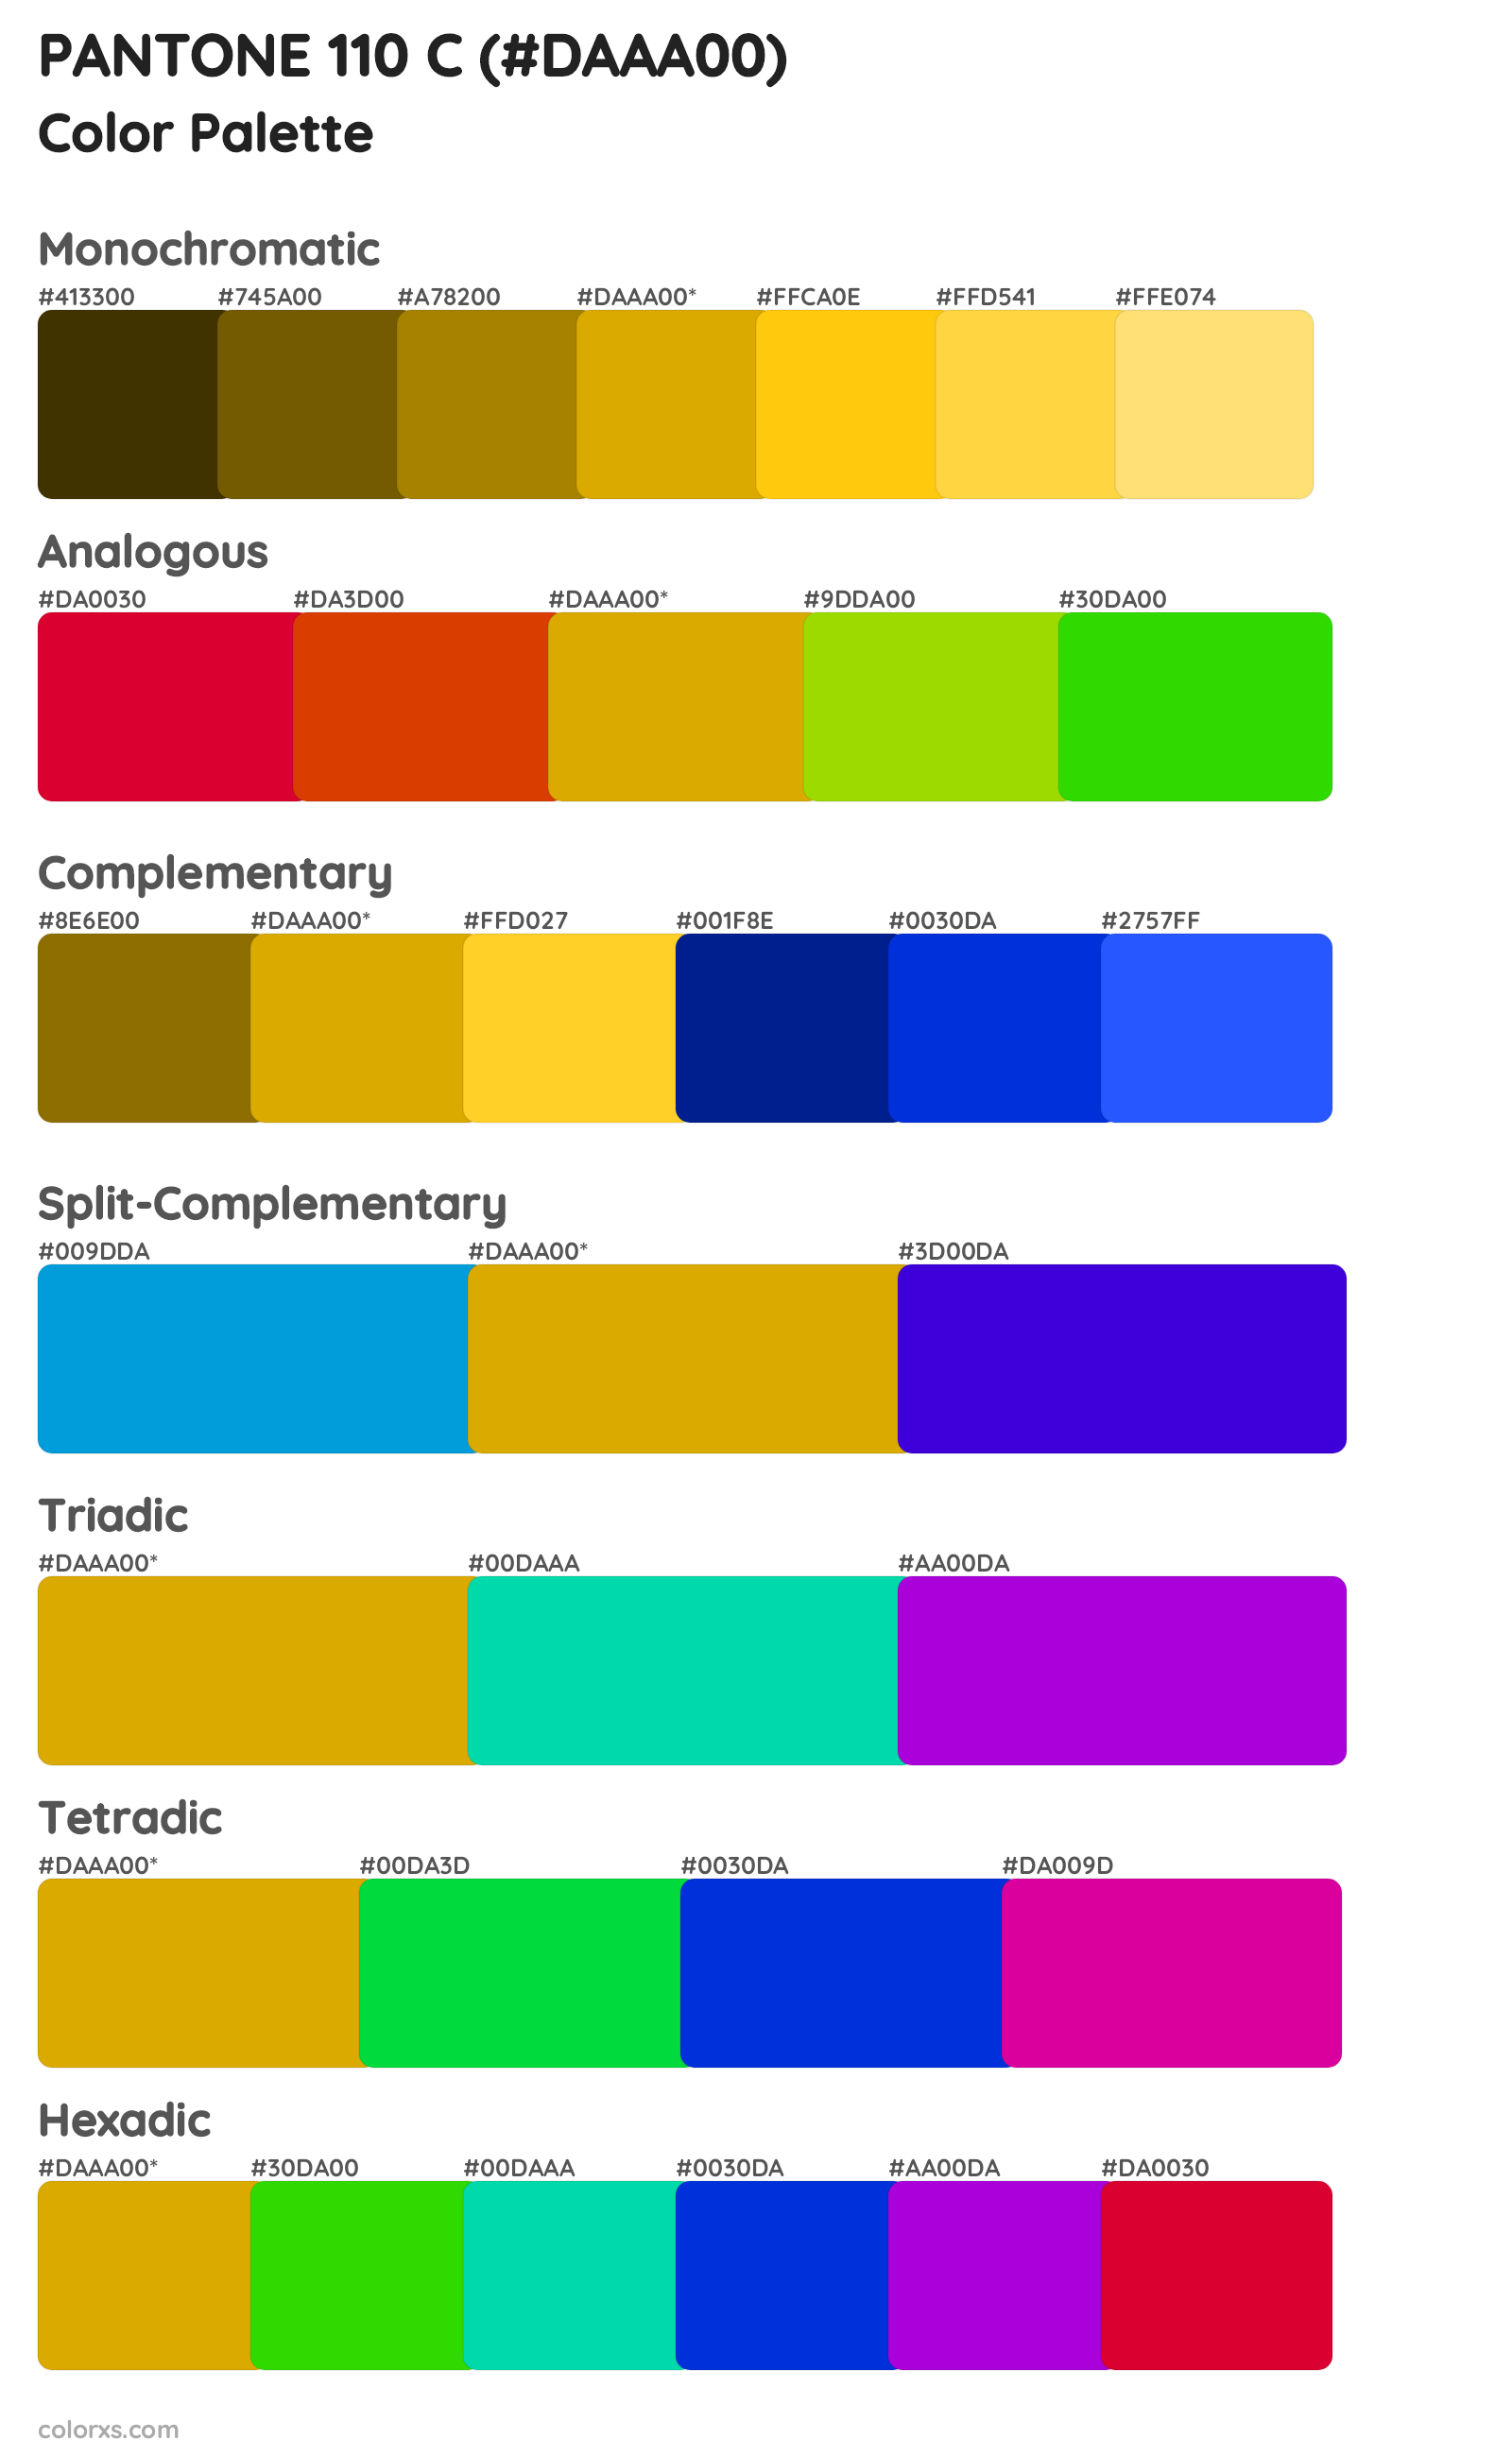 PANTONE 110 C Color Scheme Palettes